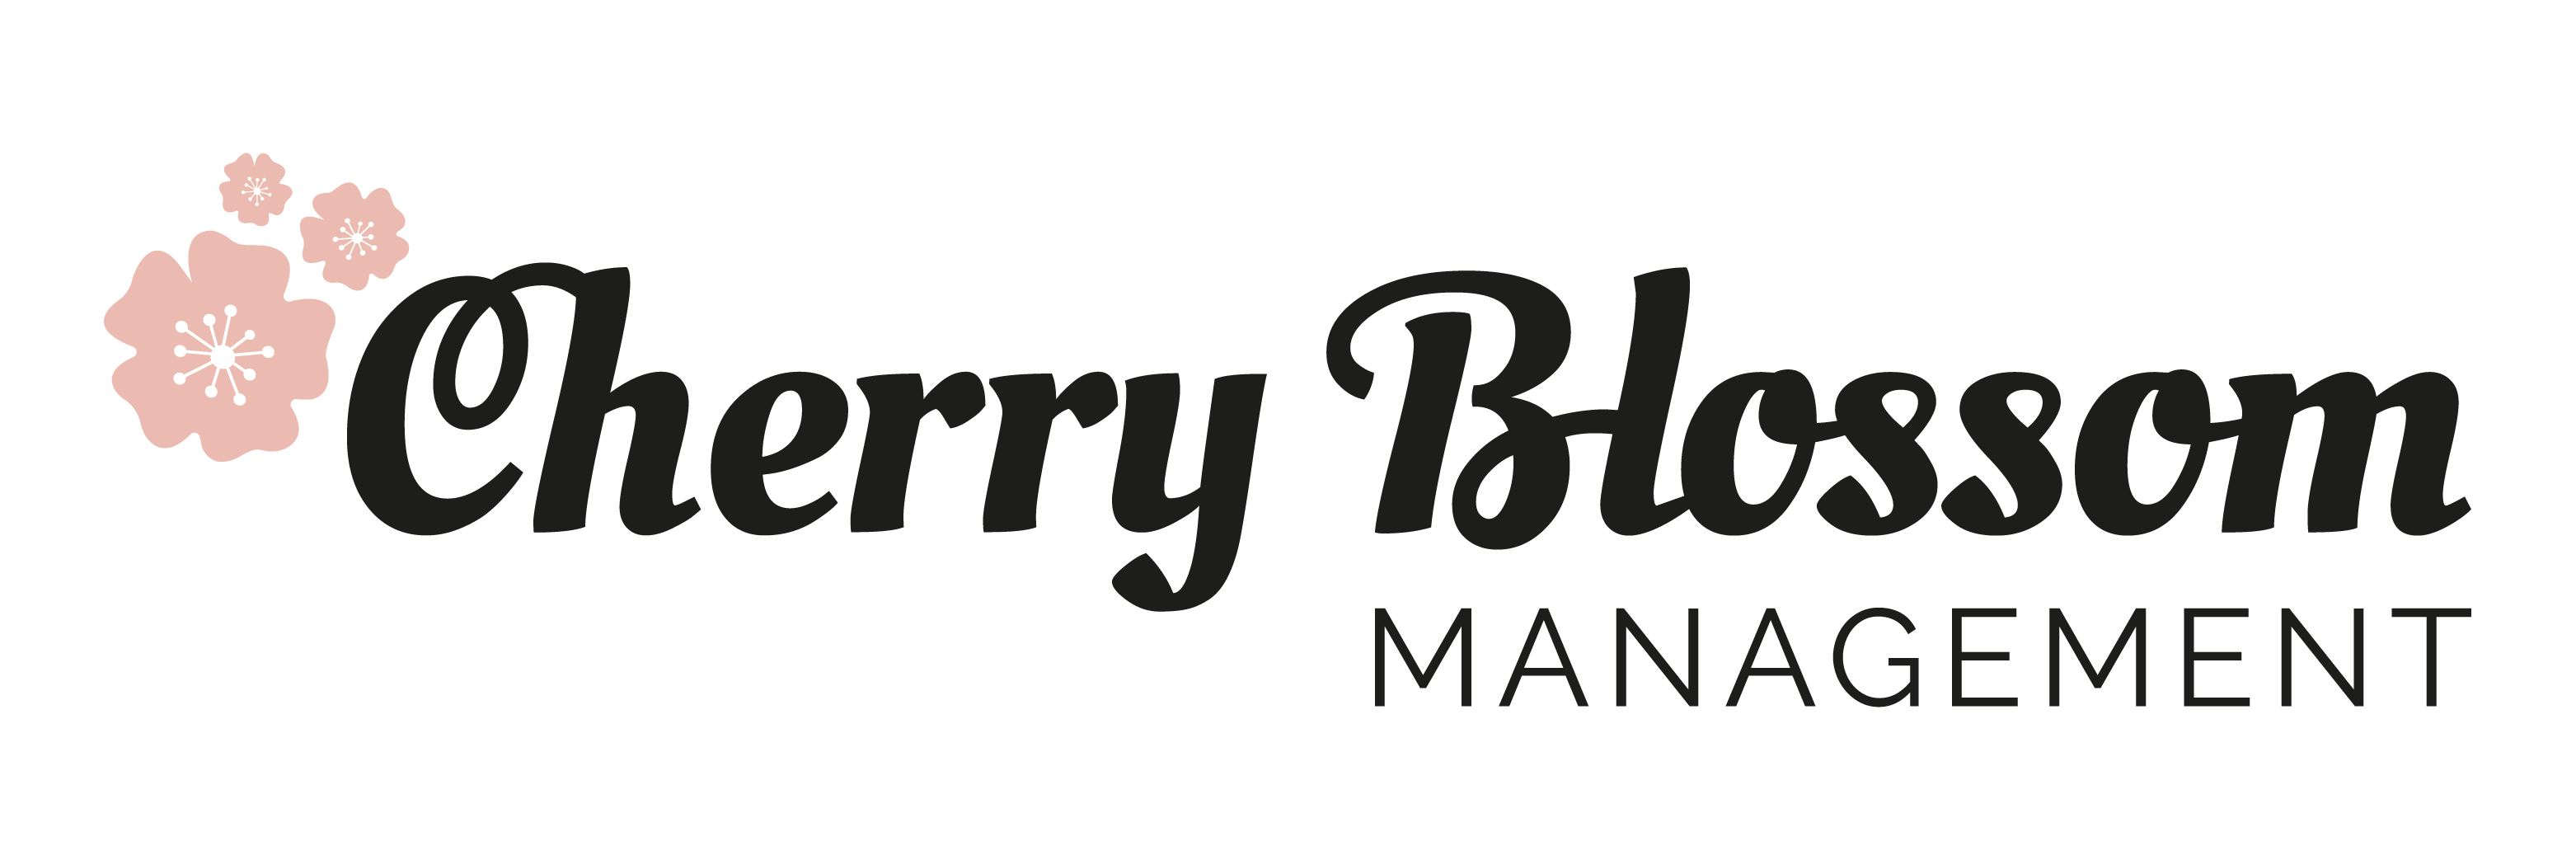 Cherry Blossom Management logo